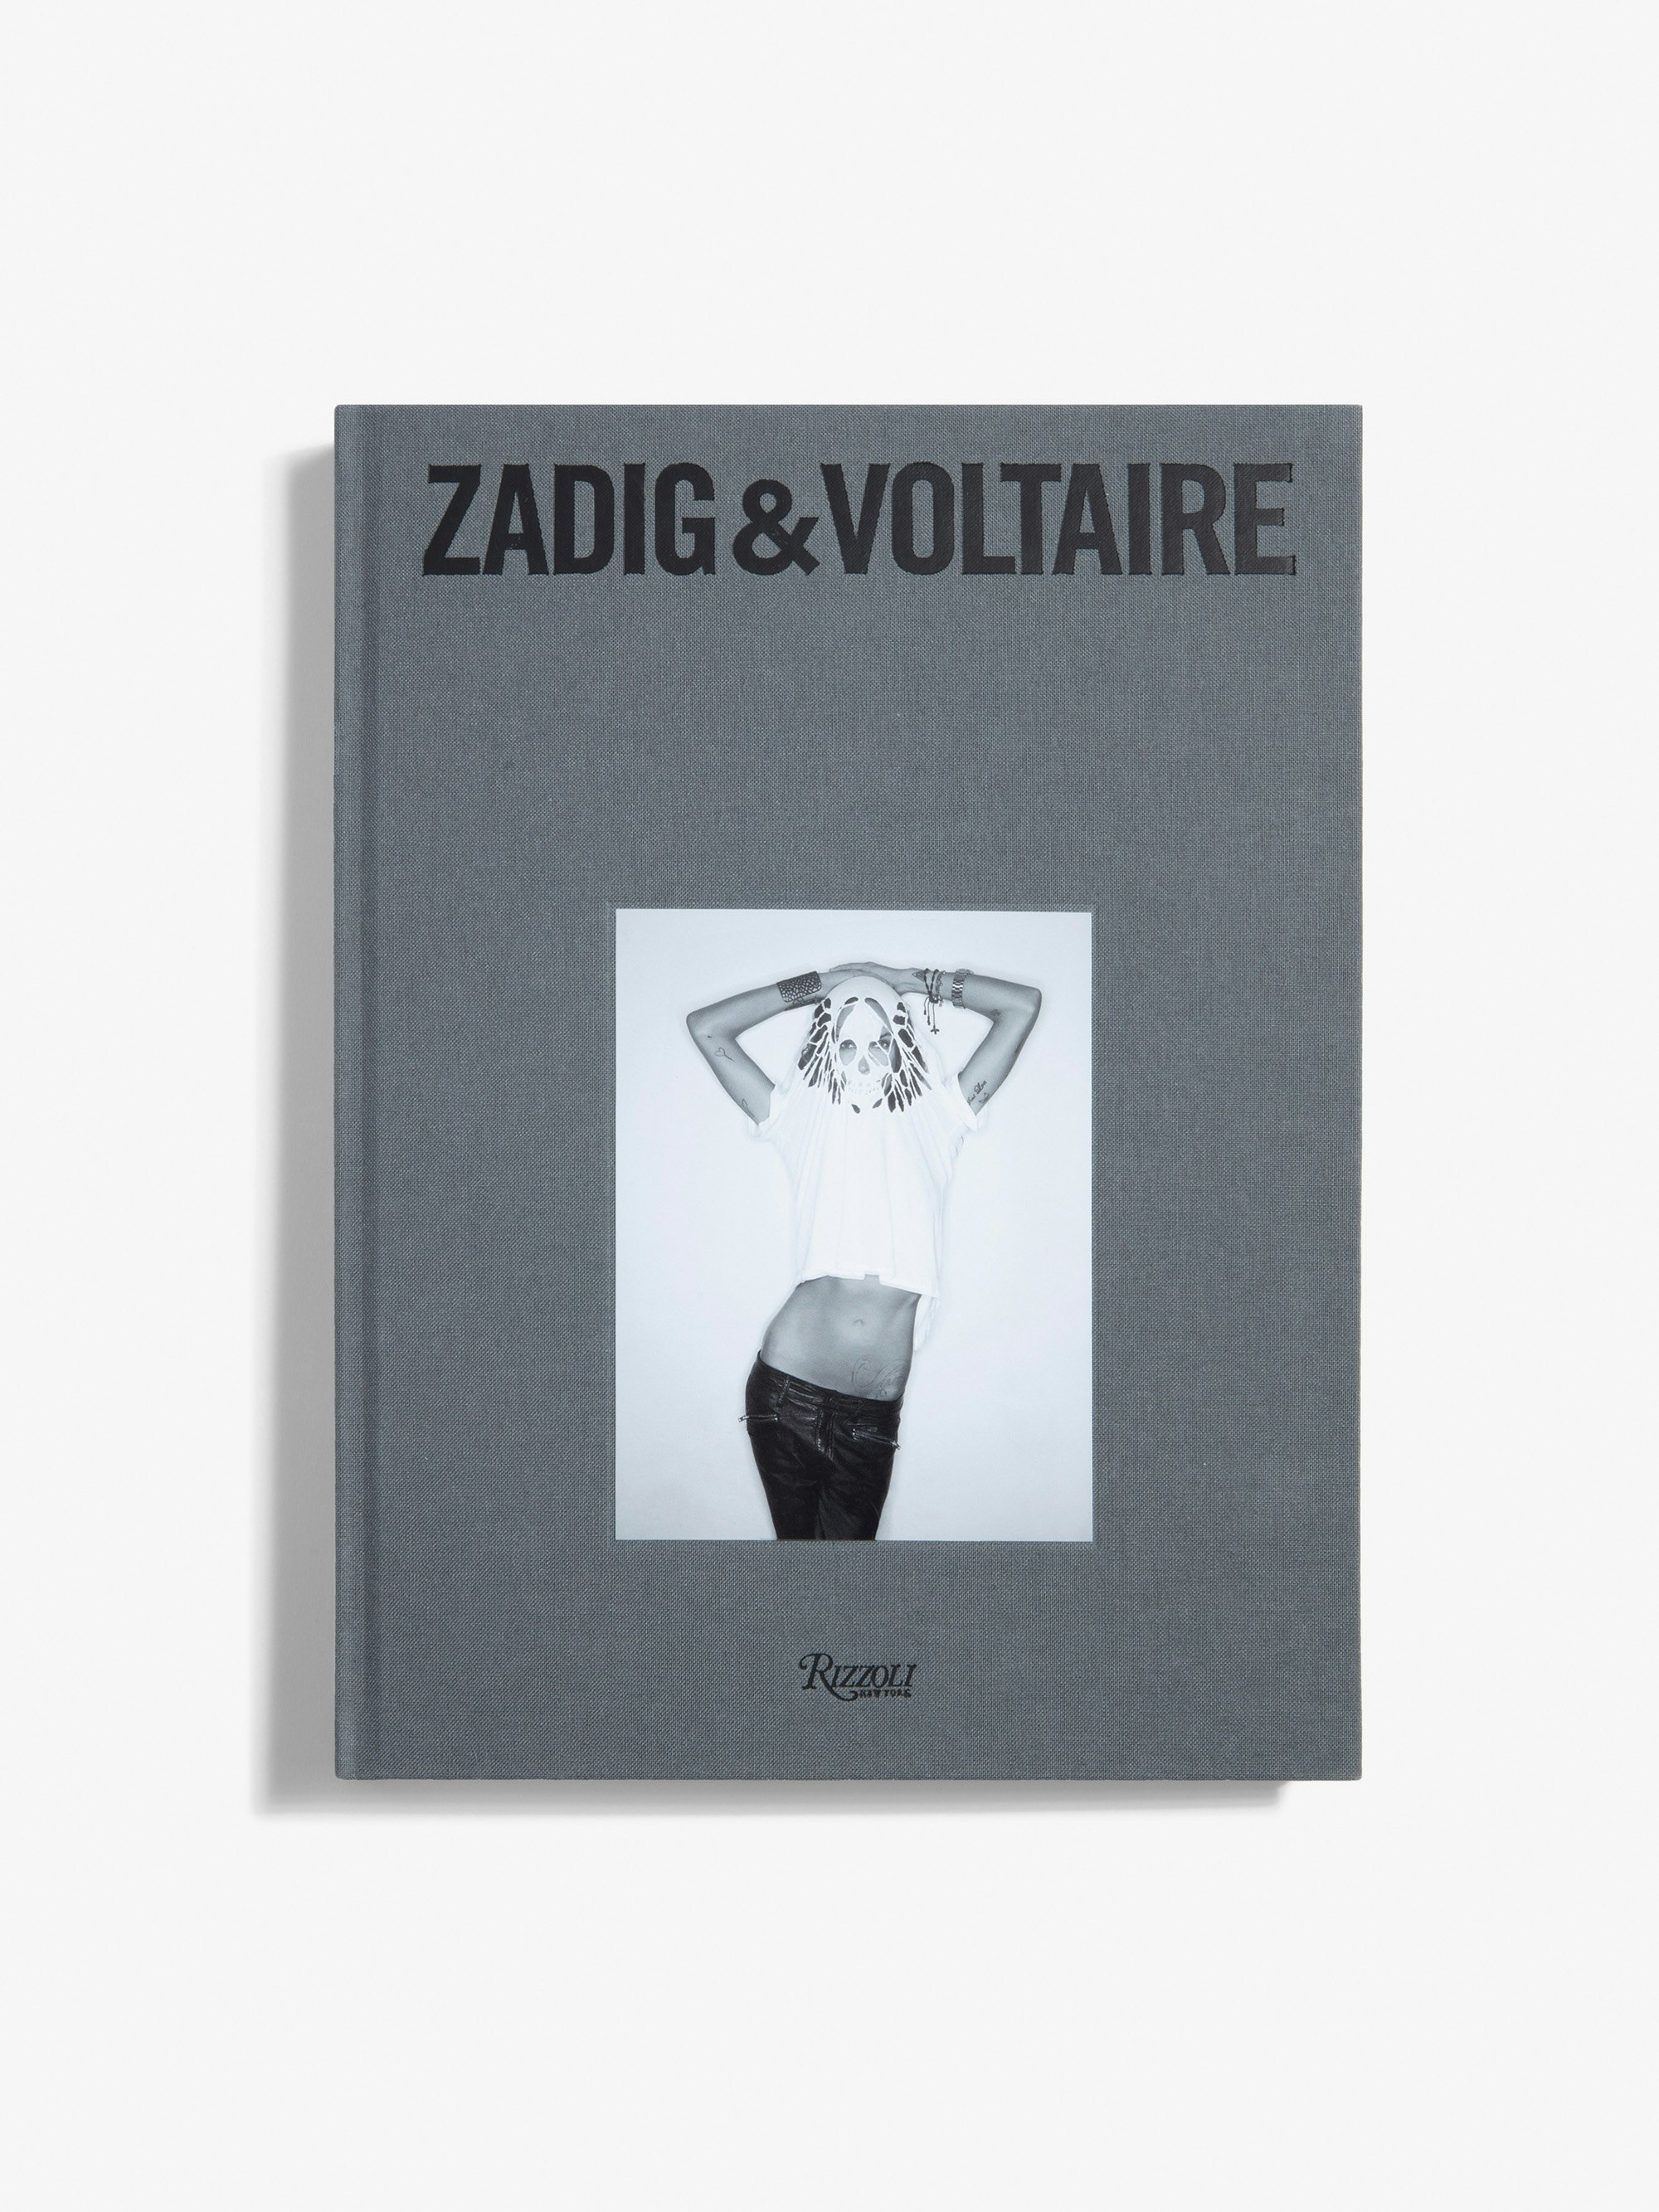 Libro "Zadig&Voltaire: Established 1997 in Paris" - Versione Francese - La prima monografia sul marchio Zadig&Voltaire pubblicata in occasione del suo 25° anniversario - Versione francese.